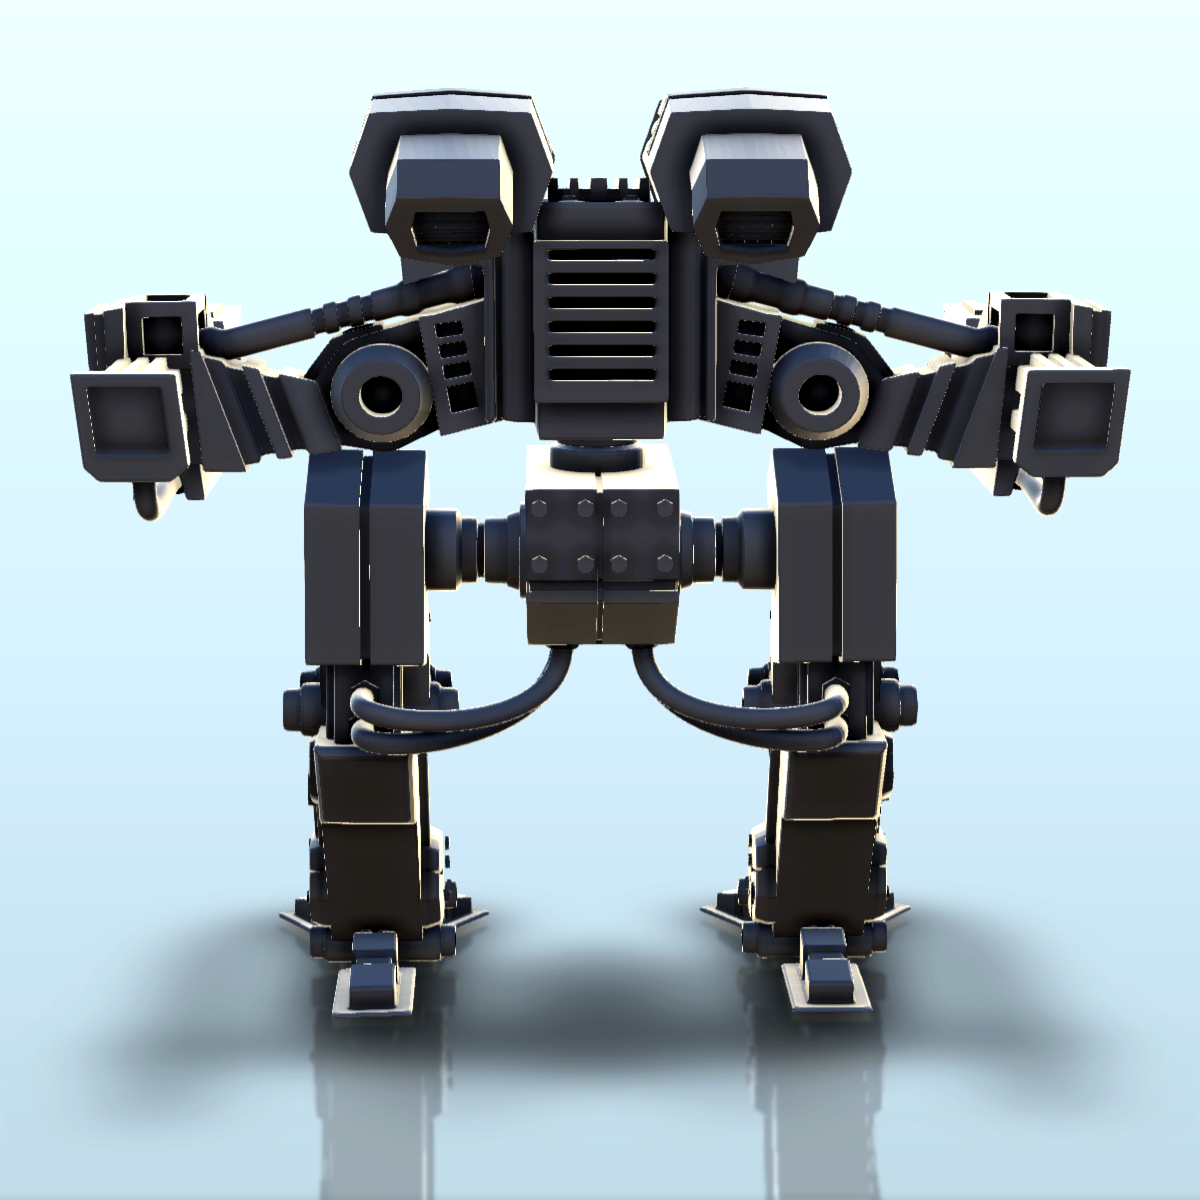 Uzsus Combat Robot 9 Battletech Mechwarrior Scifi Science Fiction